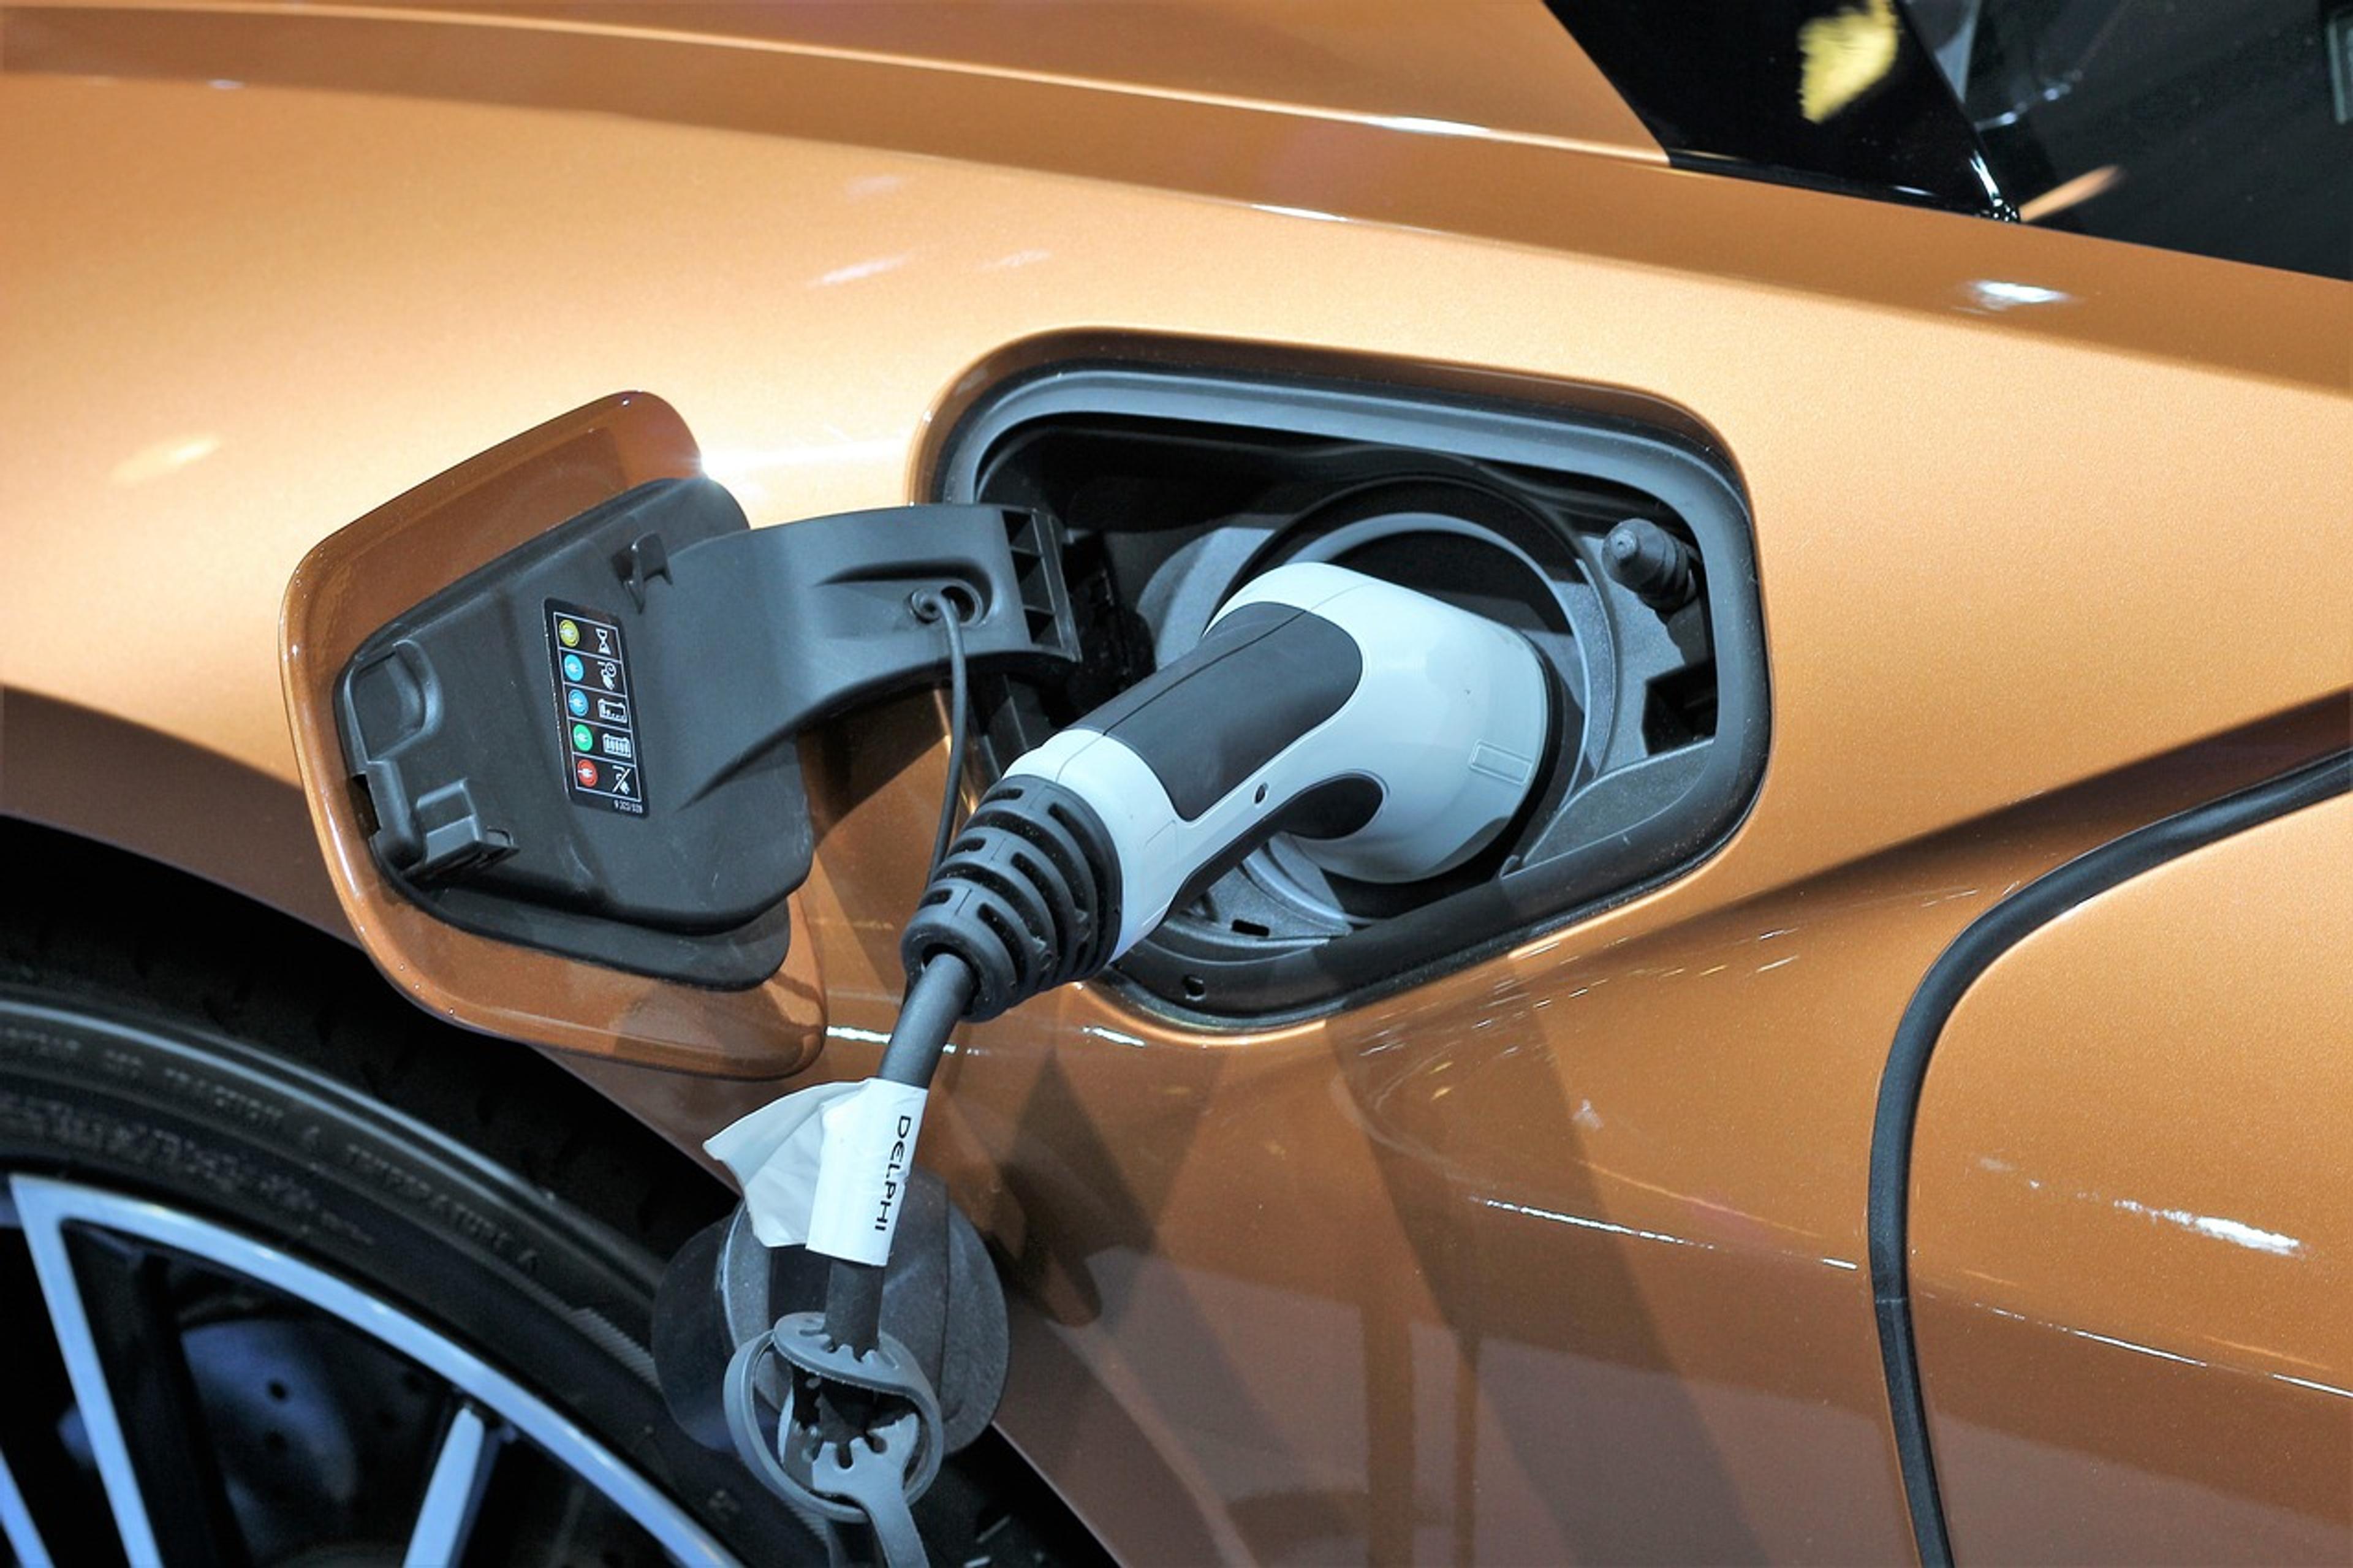 plug-in hybrid car charging